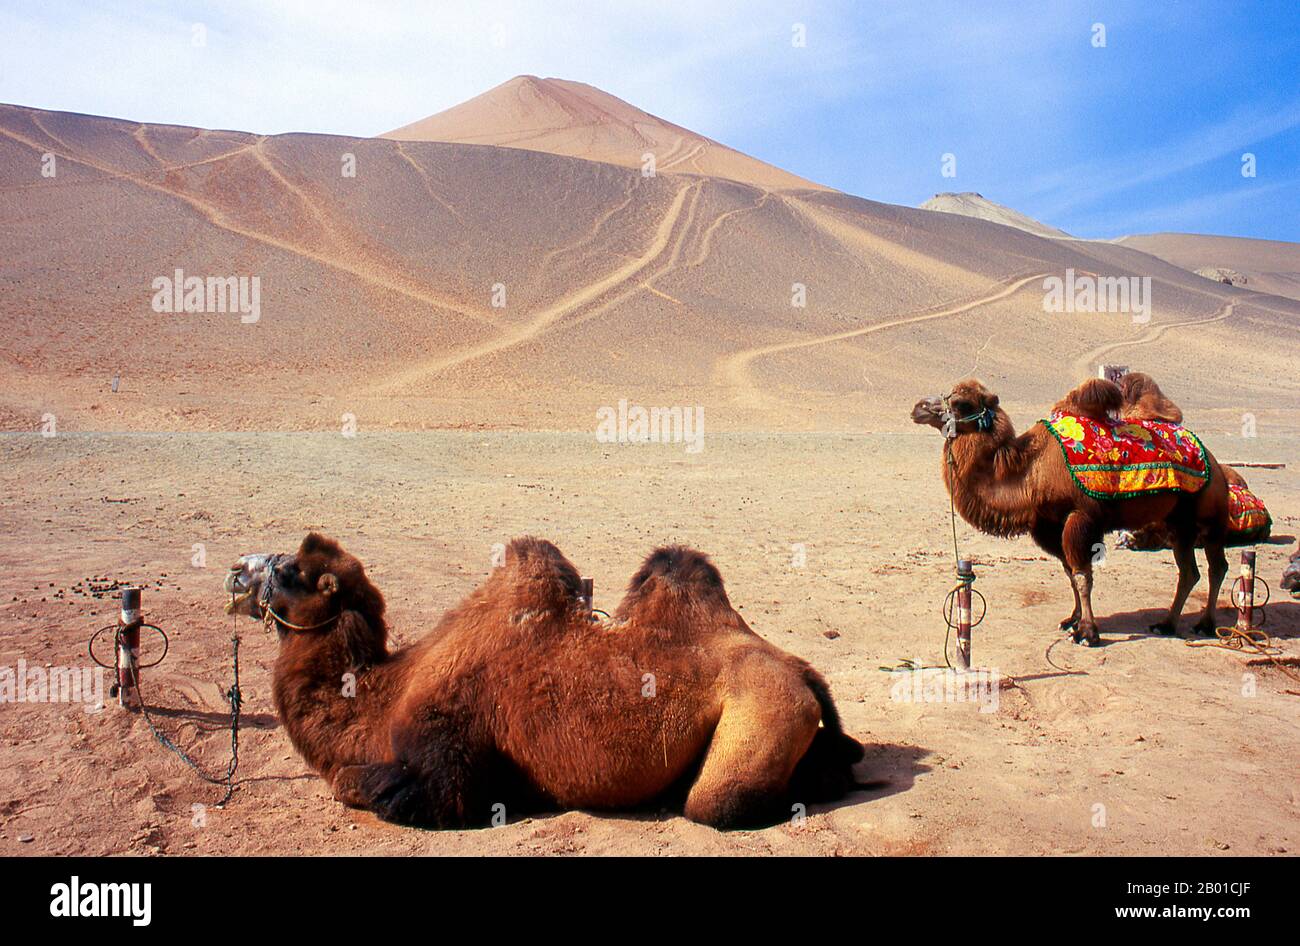 China: Kamele in der Wüste in der Nähe der Bezeklik-Höhlen, Turpan, Provinz Xinjiang. Das Baktriankamel (Camelus bactrianus) ist ein großes, gleichmäßig zungenes Huftier, das in den Steppen Zentralasiens beheimatet ist. Derzeit ist sie in der Wildnis auf entlegene Regionen der Wüsten Gobi und Taklimakan in der Mongolei und Xinjiang, China, beschränkt. Das baktrische Kamel hat zwei Höcker auf dem Rücken, im Gegensatz zum einbuckigen Dromedary-Kamel. Die Bezeklik Thousand Buddha Caves (Bozikeli Qian Fo Dong) sind ein Komplex buddhistischer Höhlengrotten aus dem 5.. Bis 9.. Jahrhundert. Es gibt 77 Felsenhöhlen an diesem Ort. Stockfoto